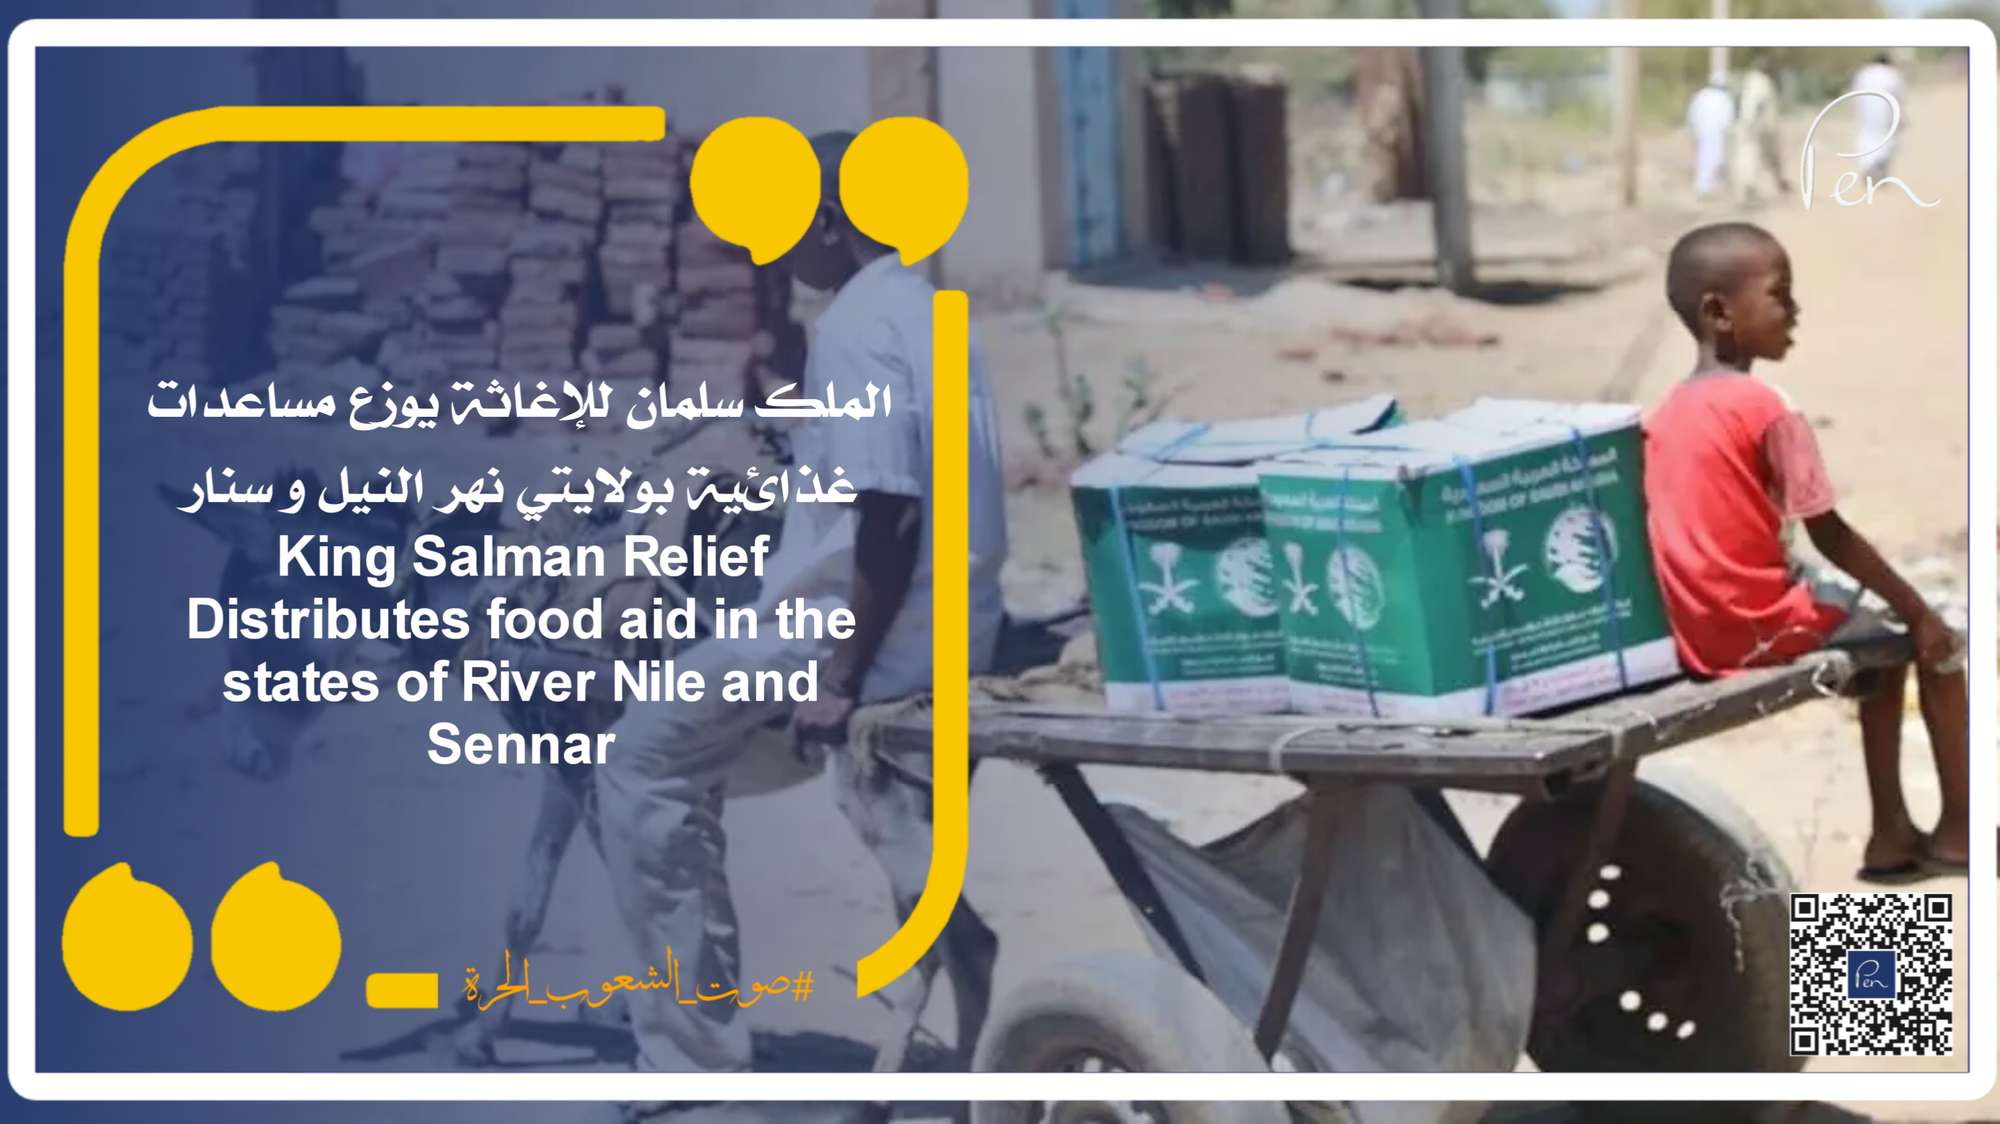 الملك سلمان للإغاثة يوزع مساعدات غذائية بولايتي نهر النيل و سنار